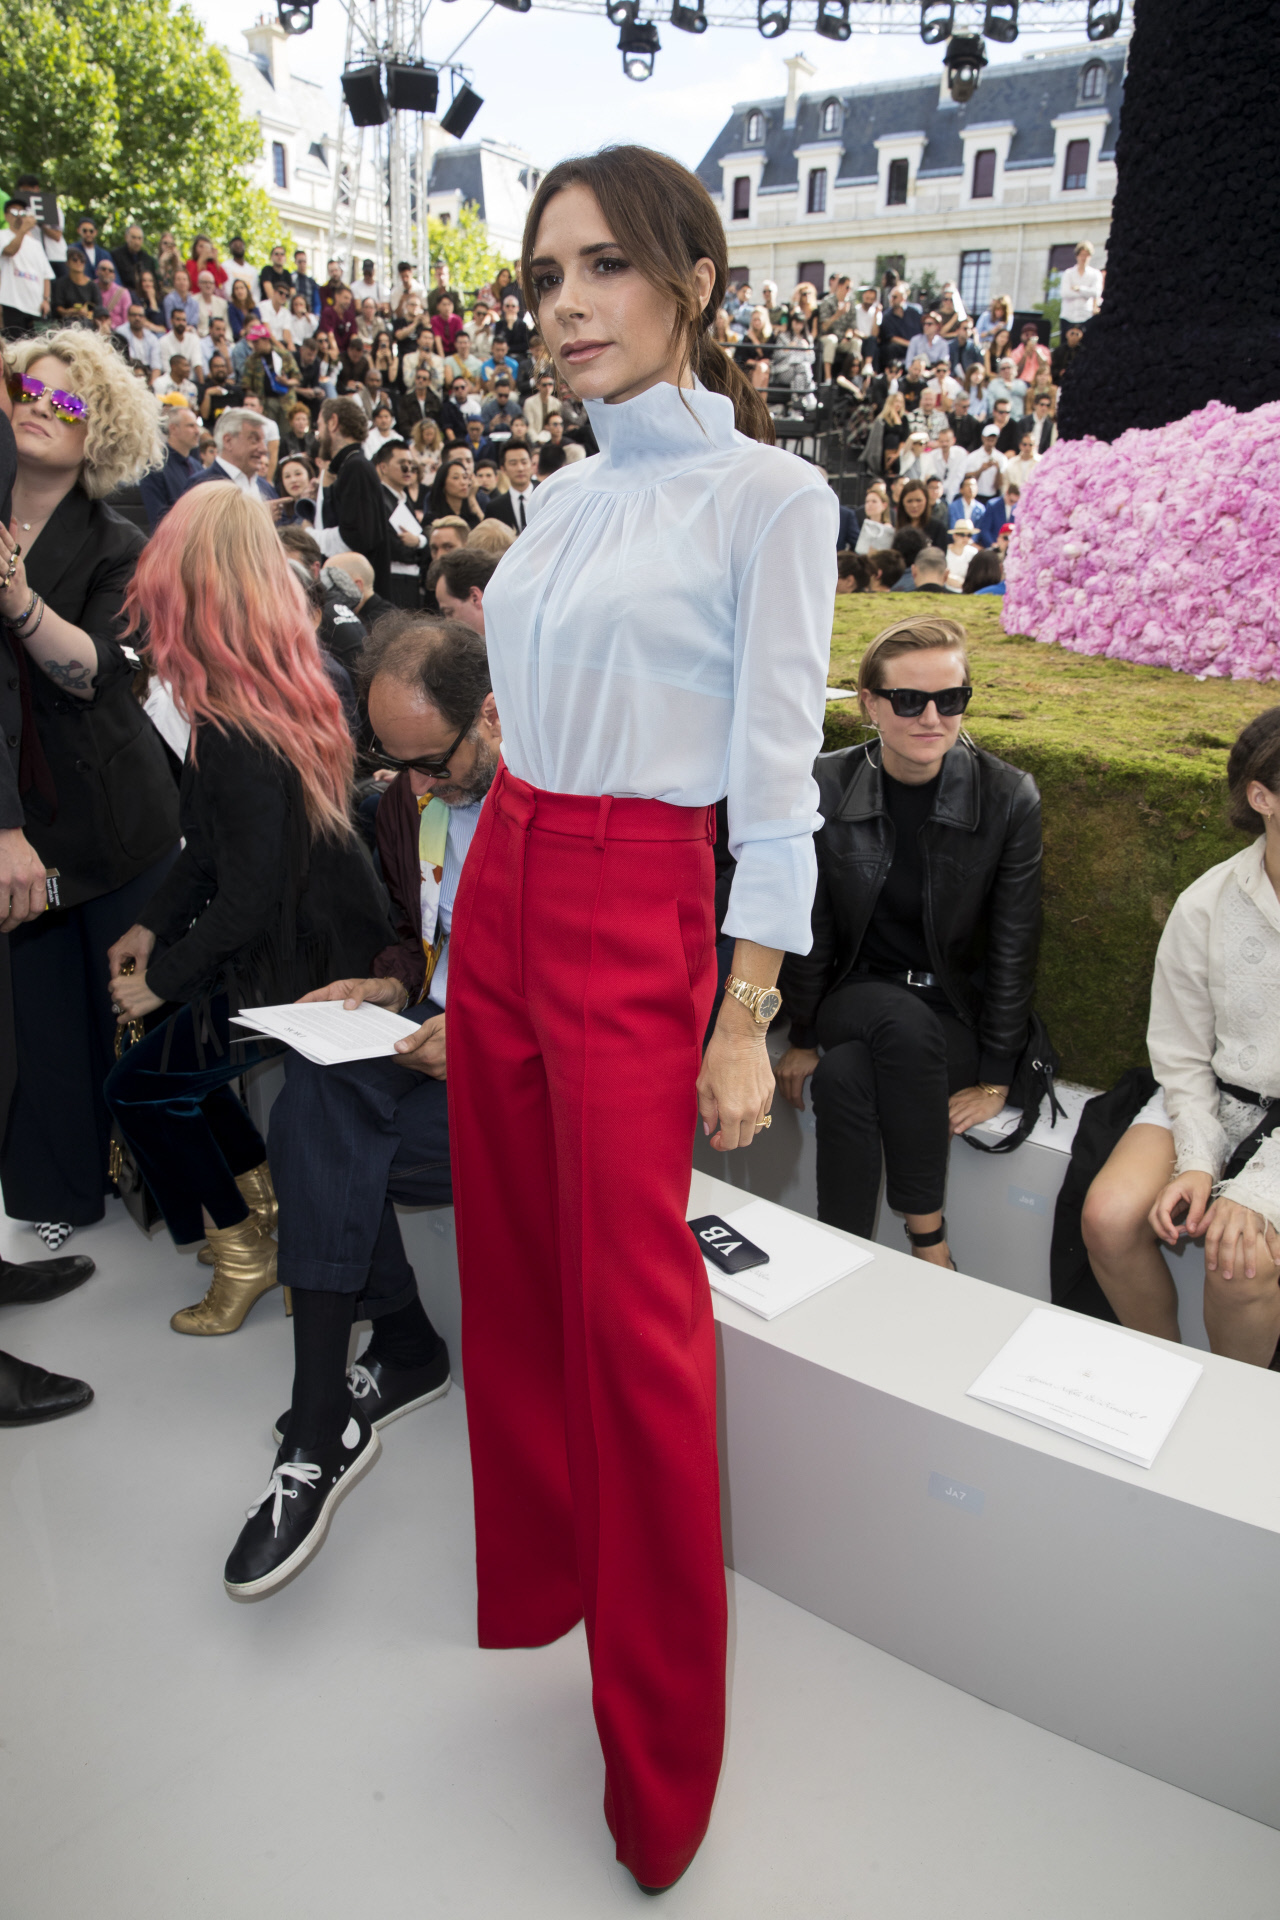 Pantalón sastre + blanca: el look imbatible de Victoria Beckham | Telva.com